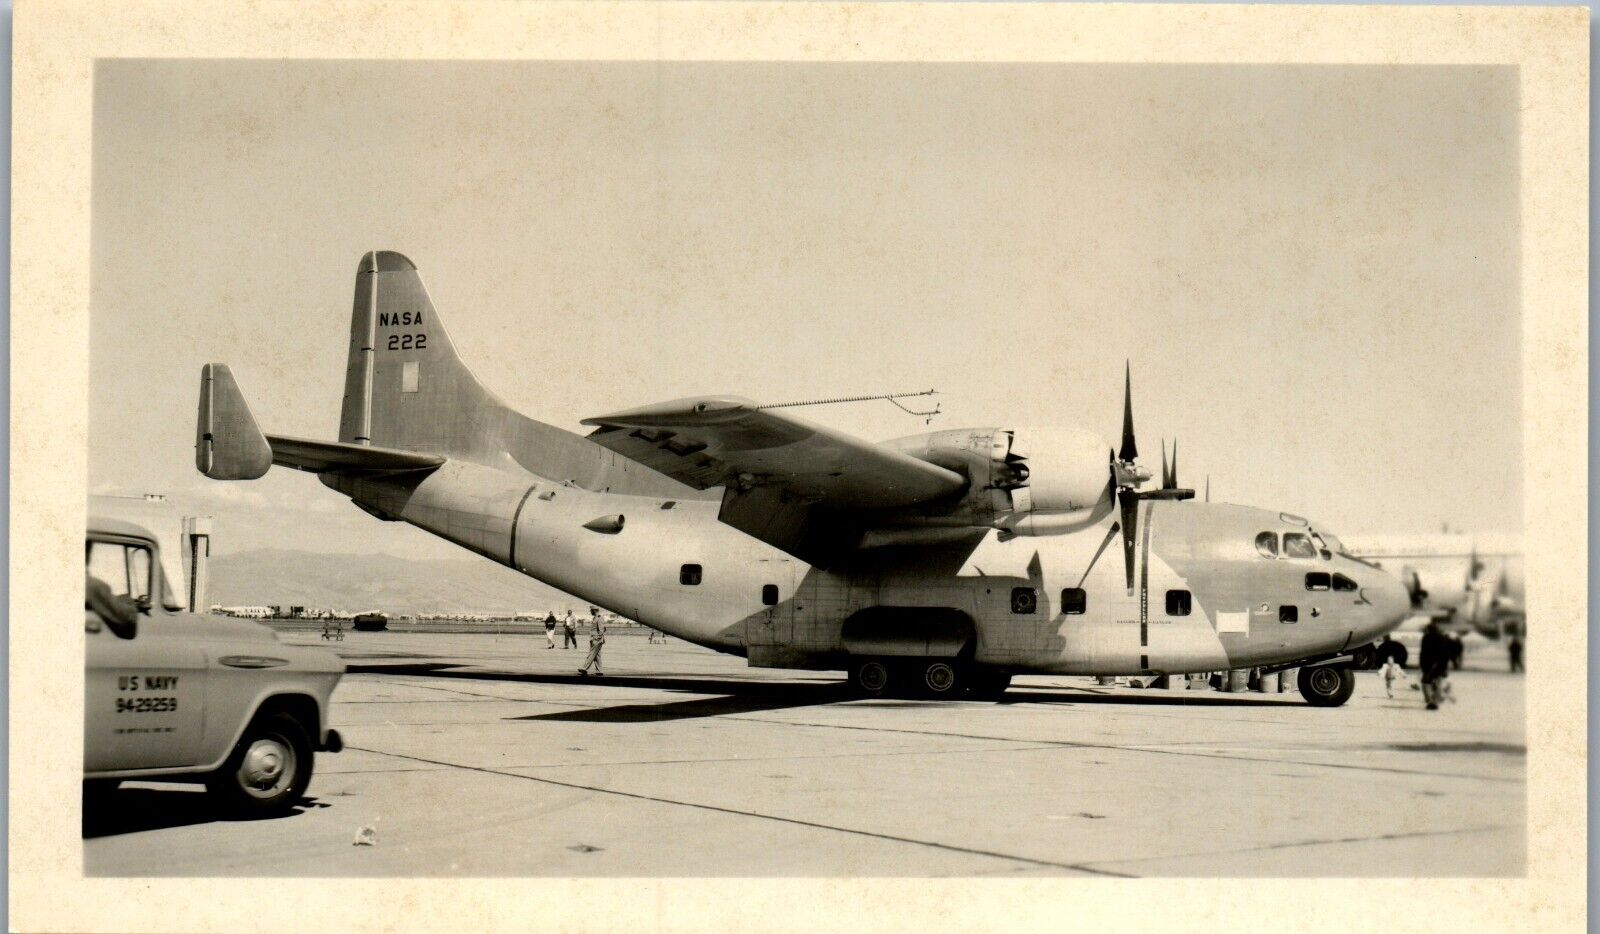 Fairchild C-123 Provider Plane (3 x 5 in) 1950s